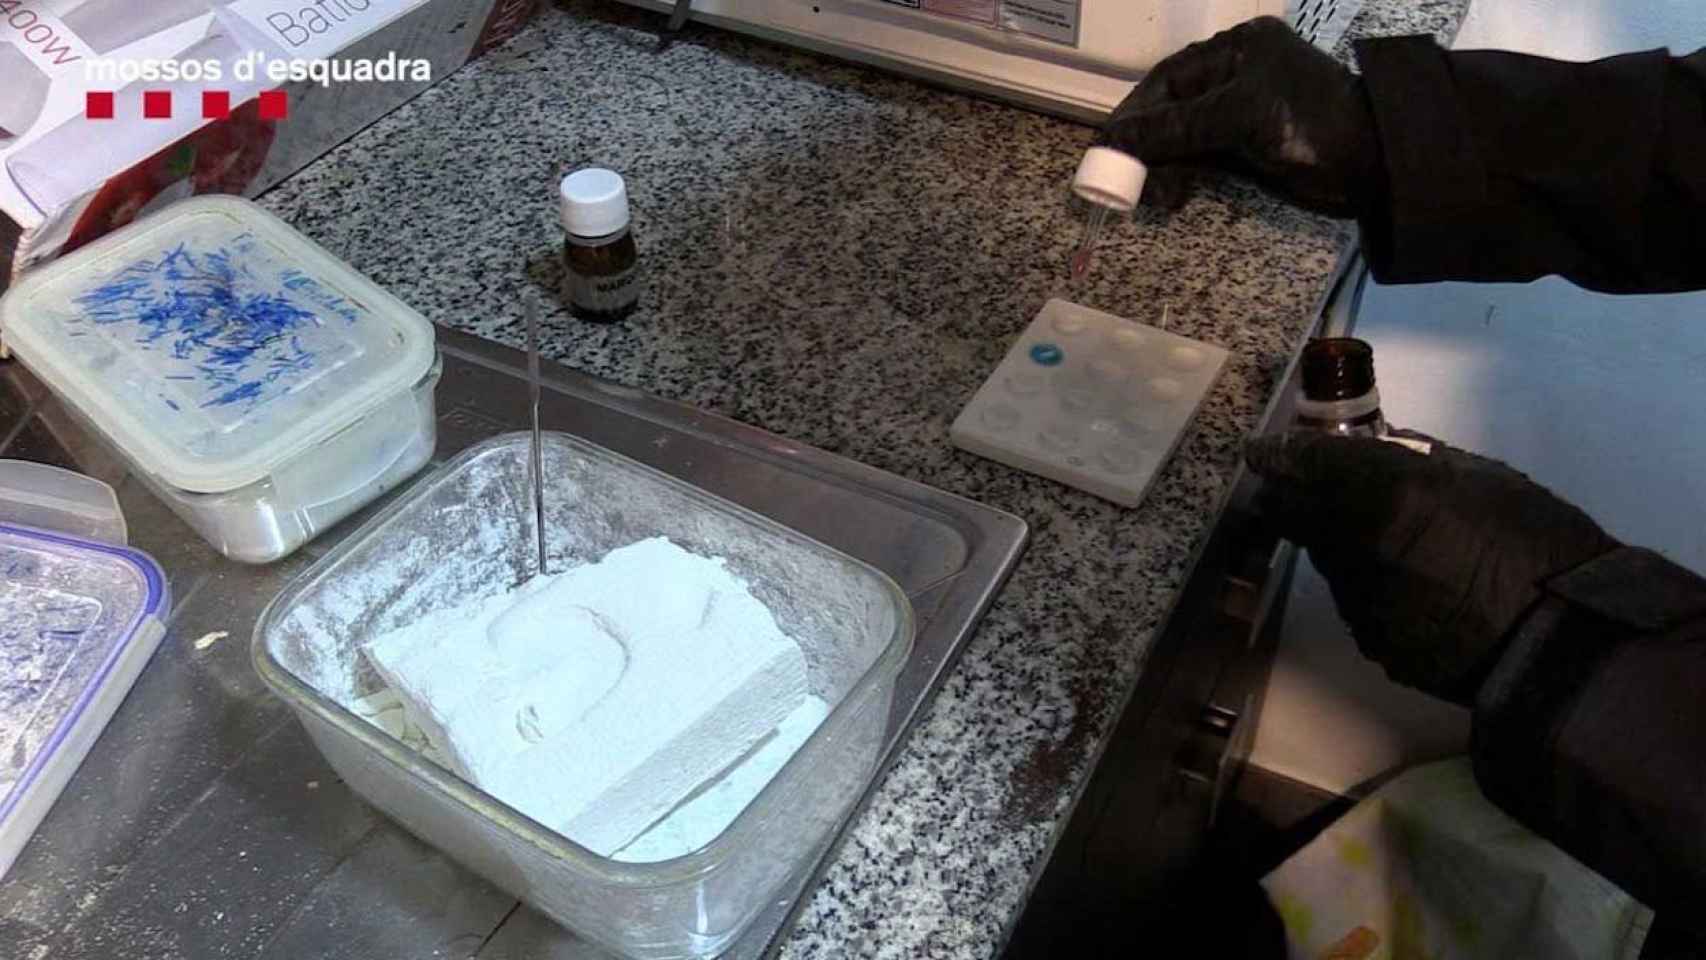 Venta de cocaína en una imagen de archivo / MOSSOS D'ESQUADRA